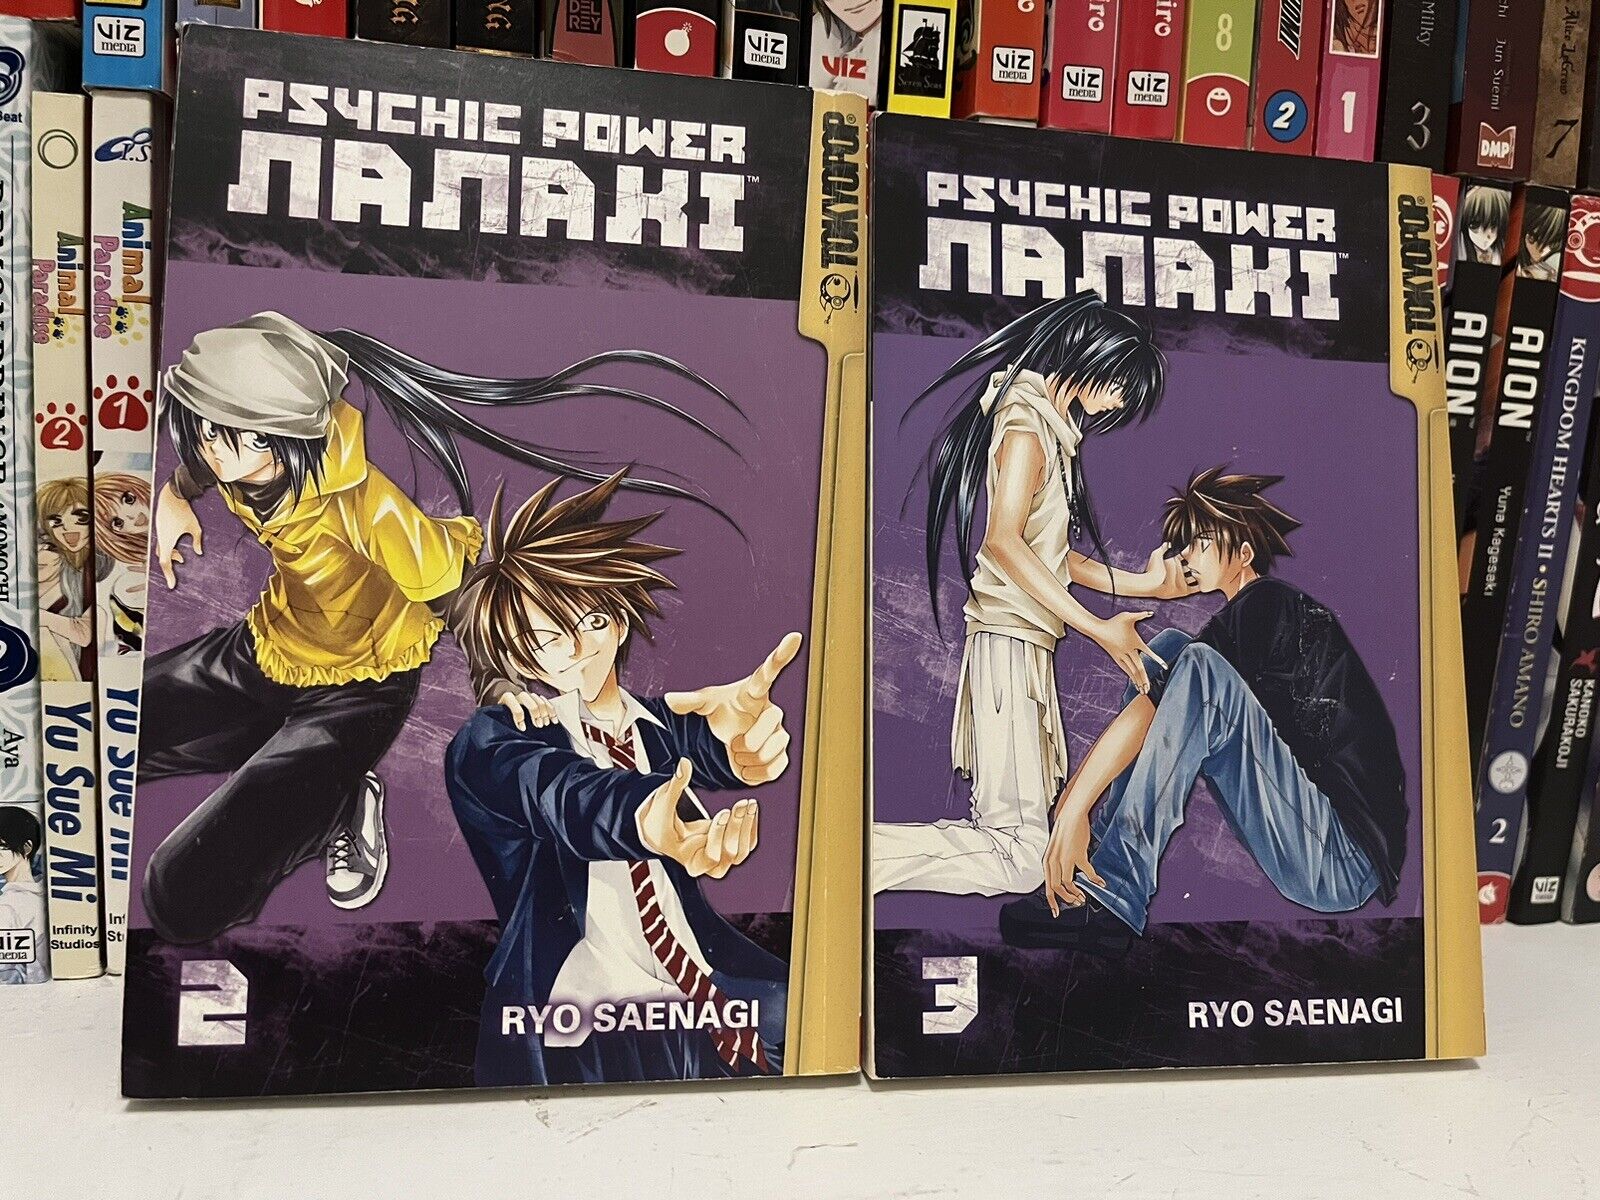 Psychic Power Nanaki Manga Volumes 2-3